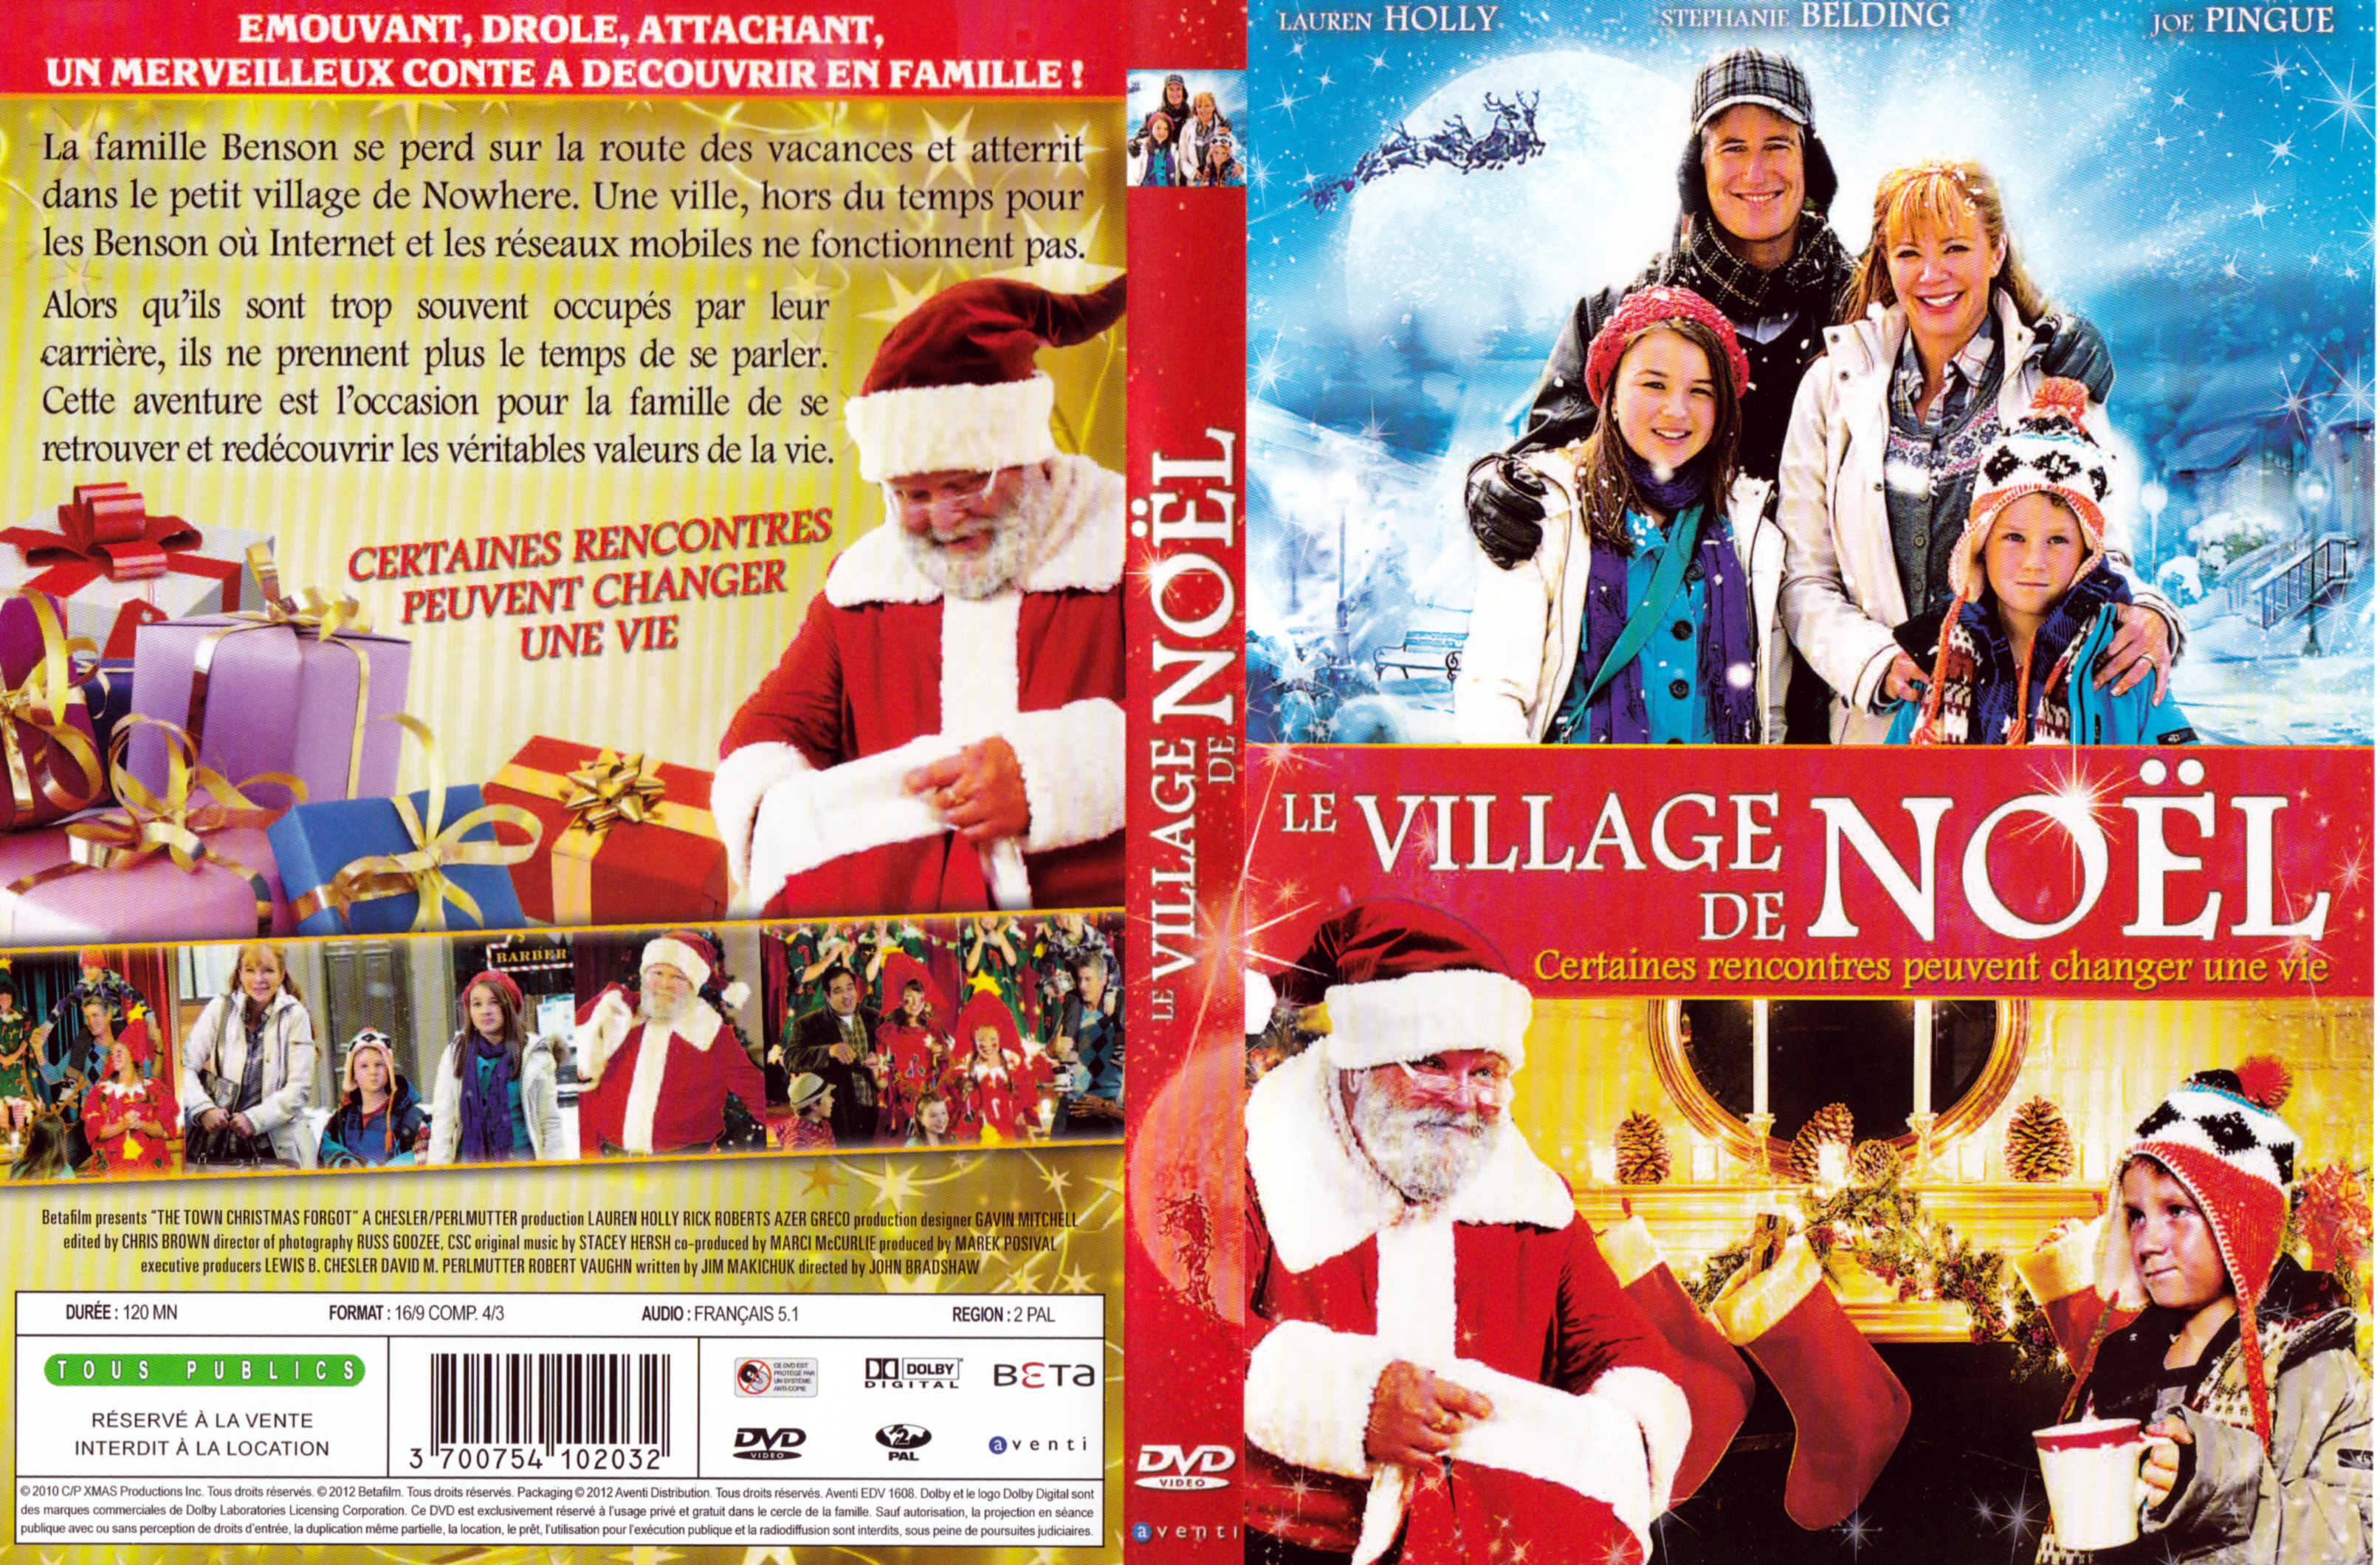 Jaquette DVD Le Village de Nol